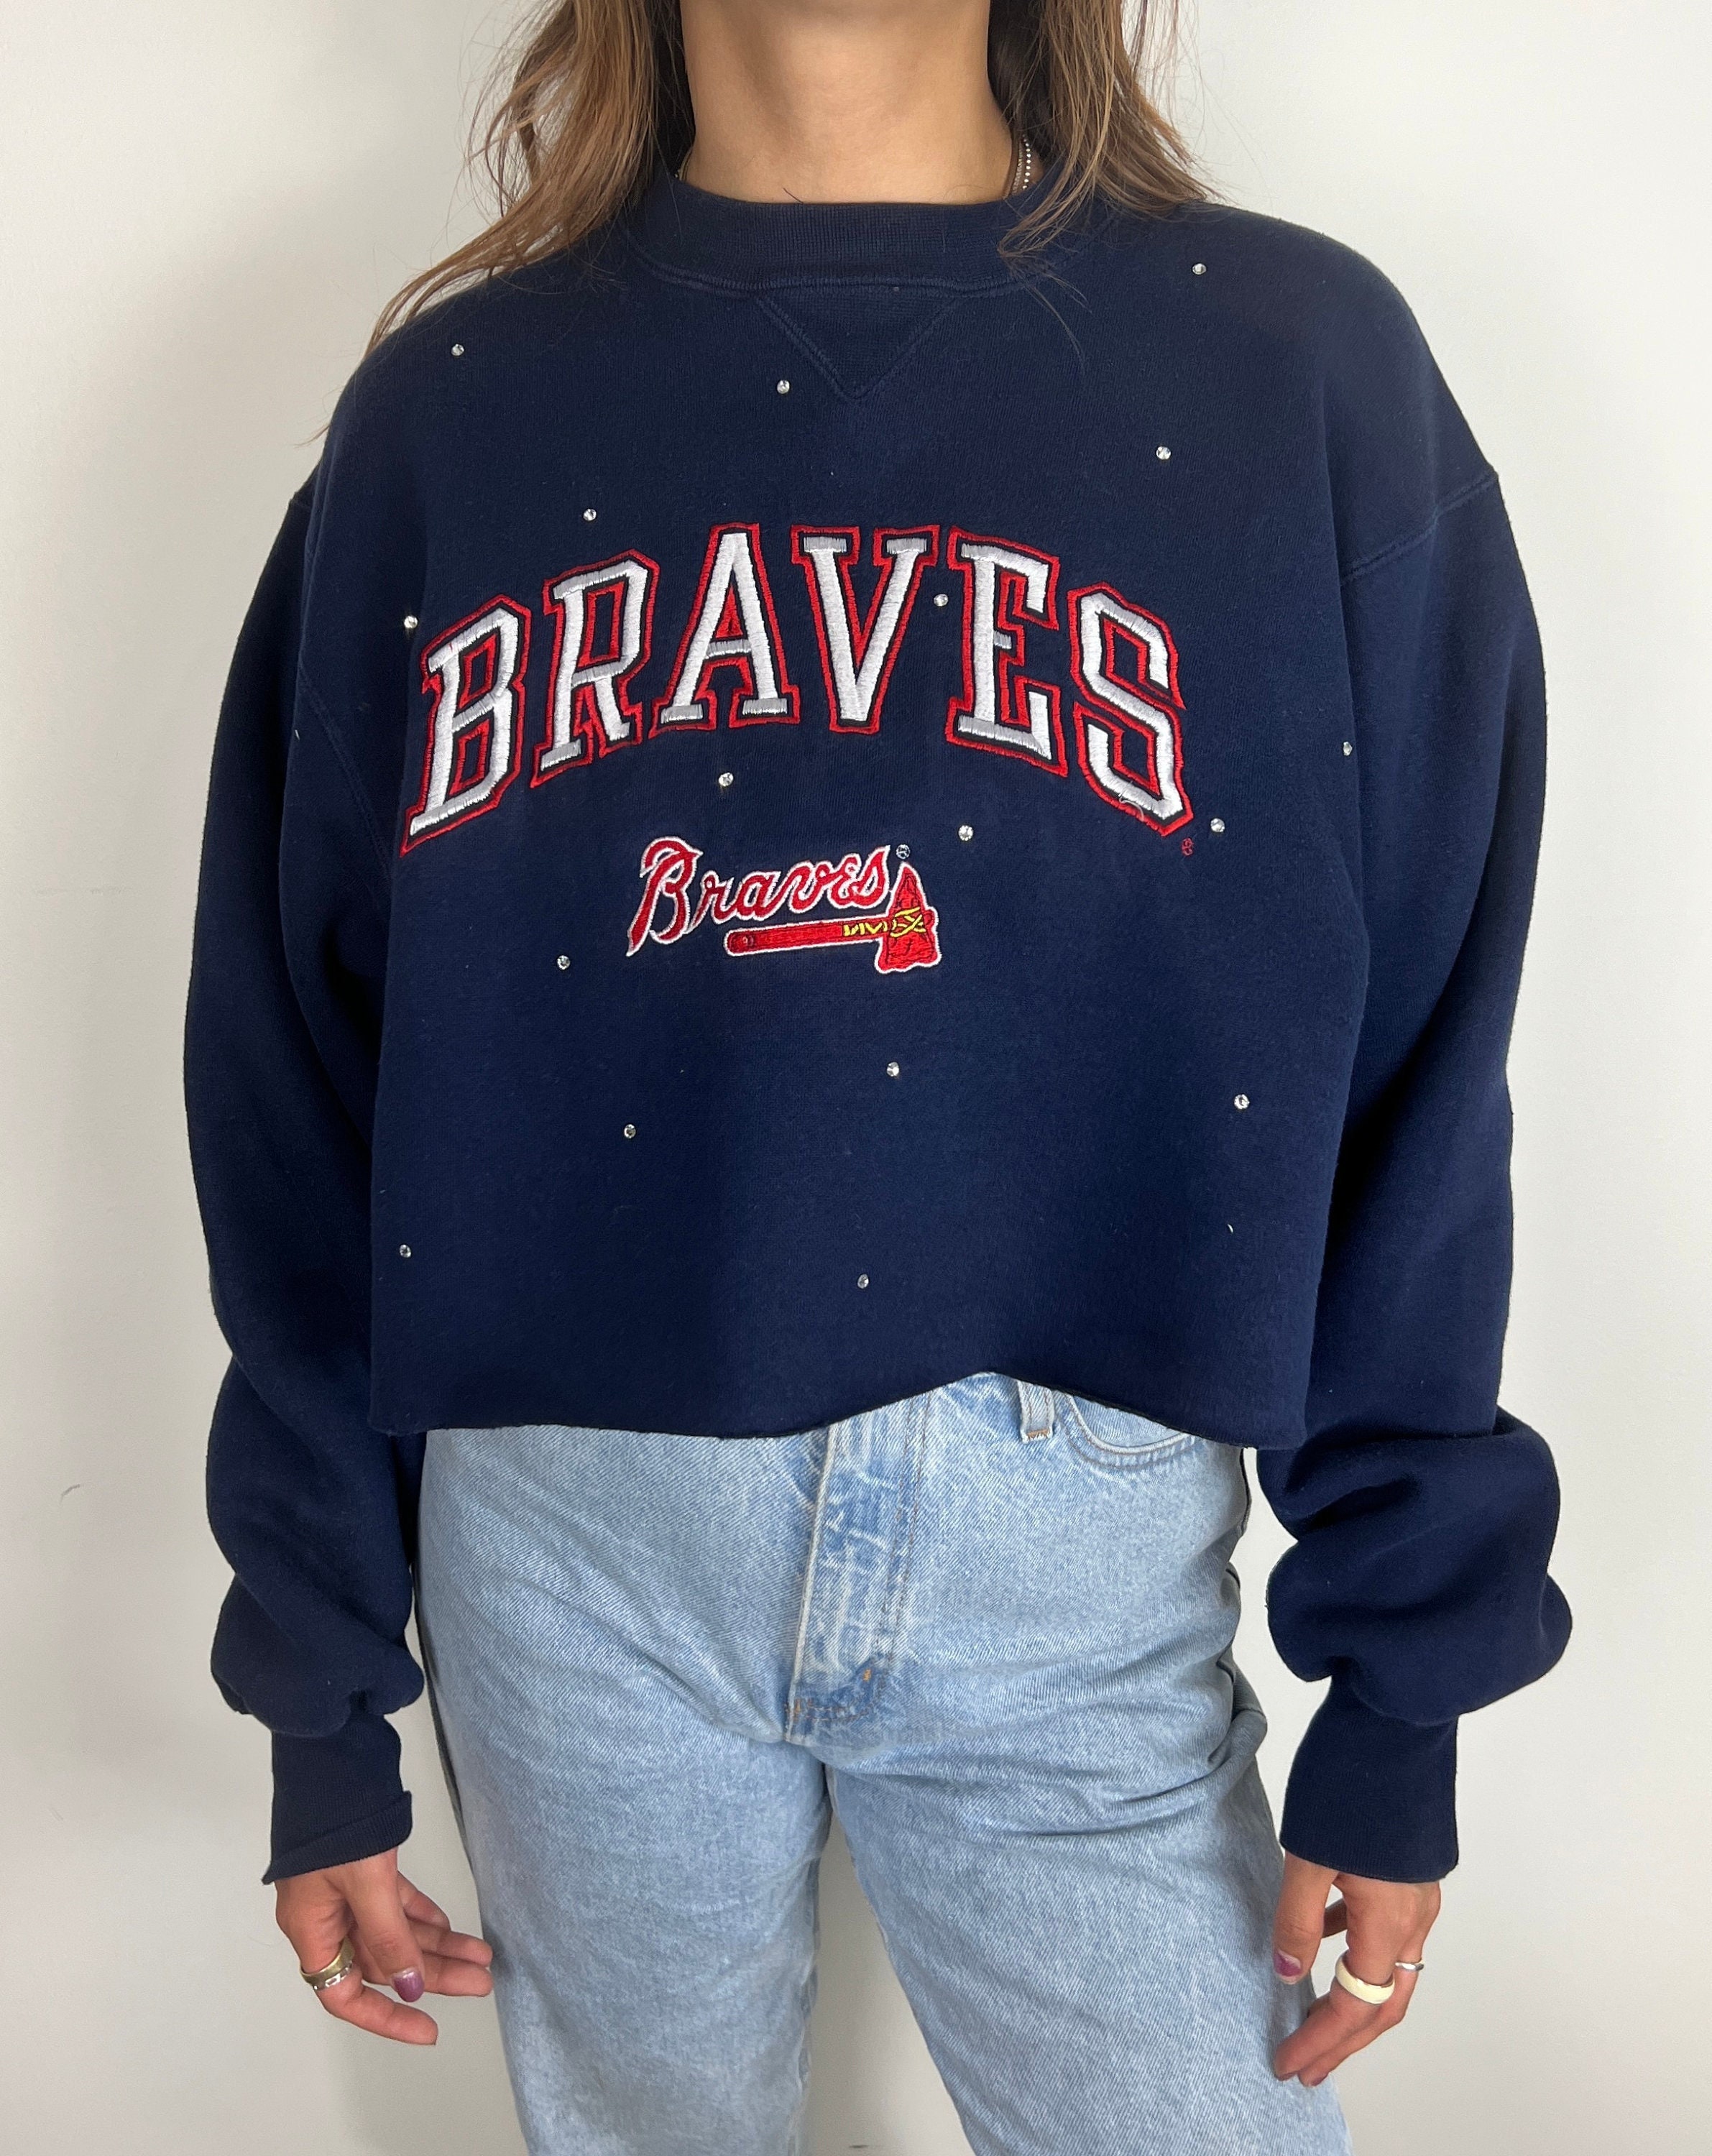 braves vintage sweatshirt